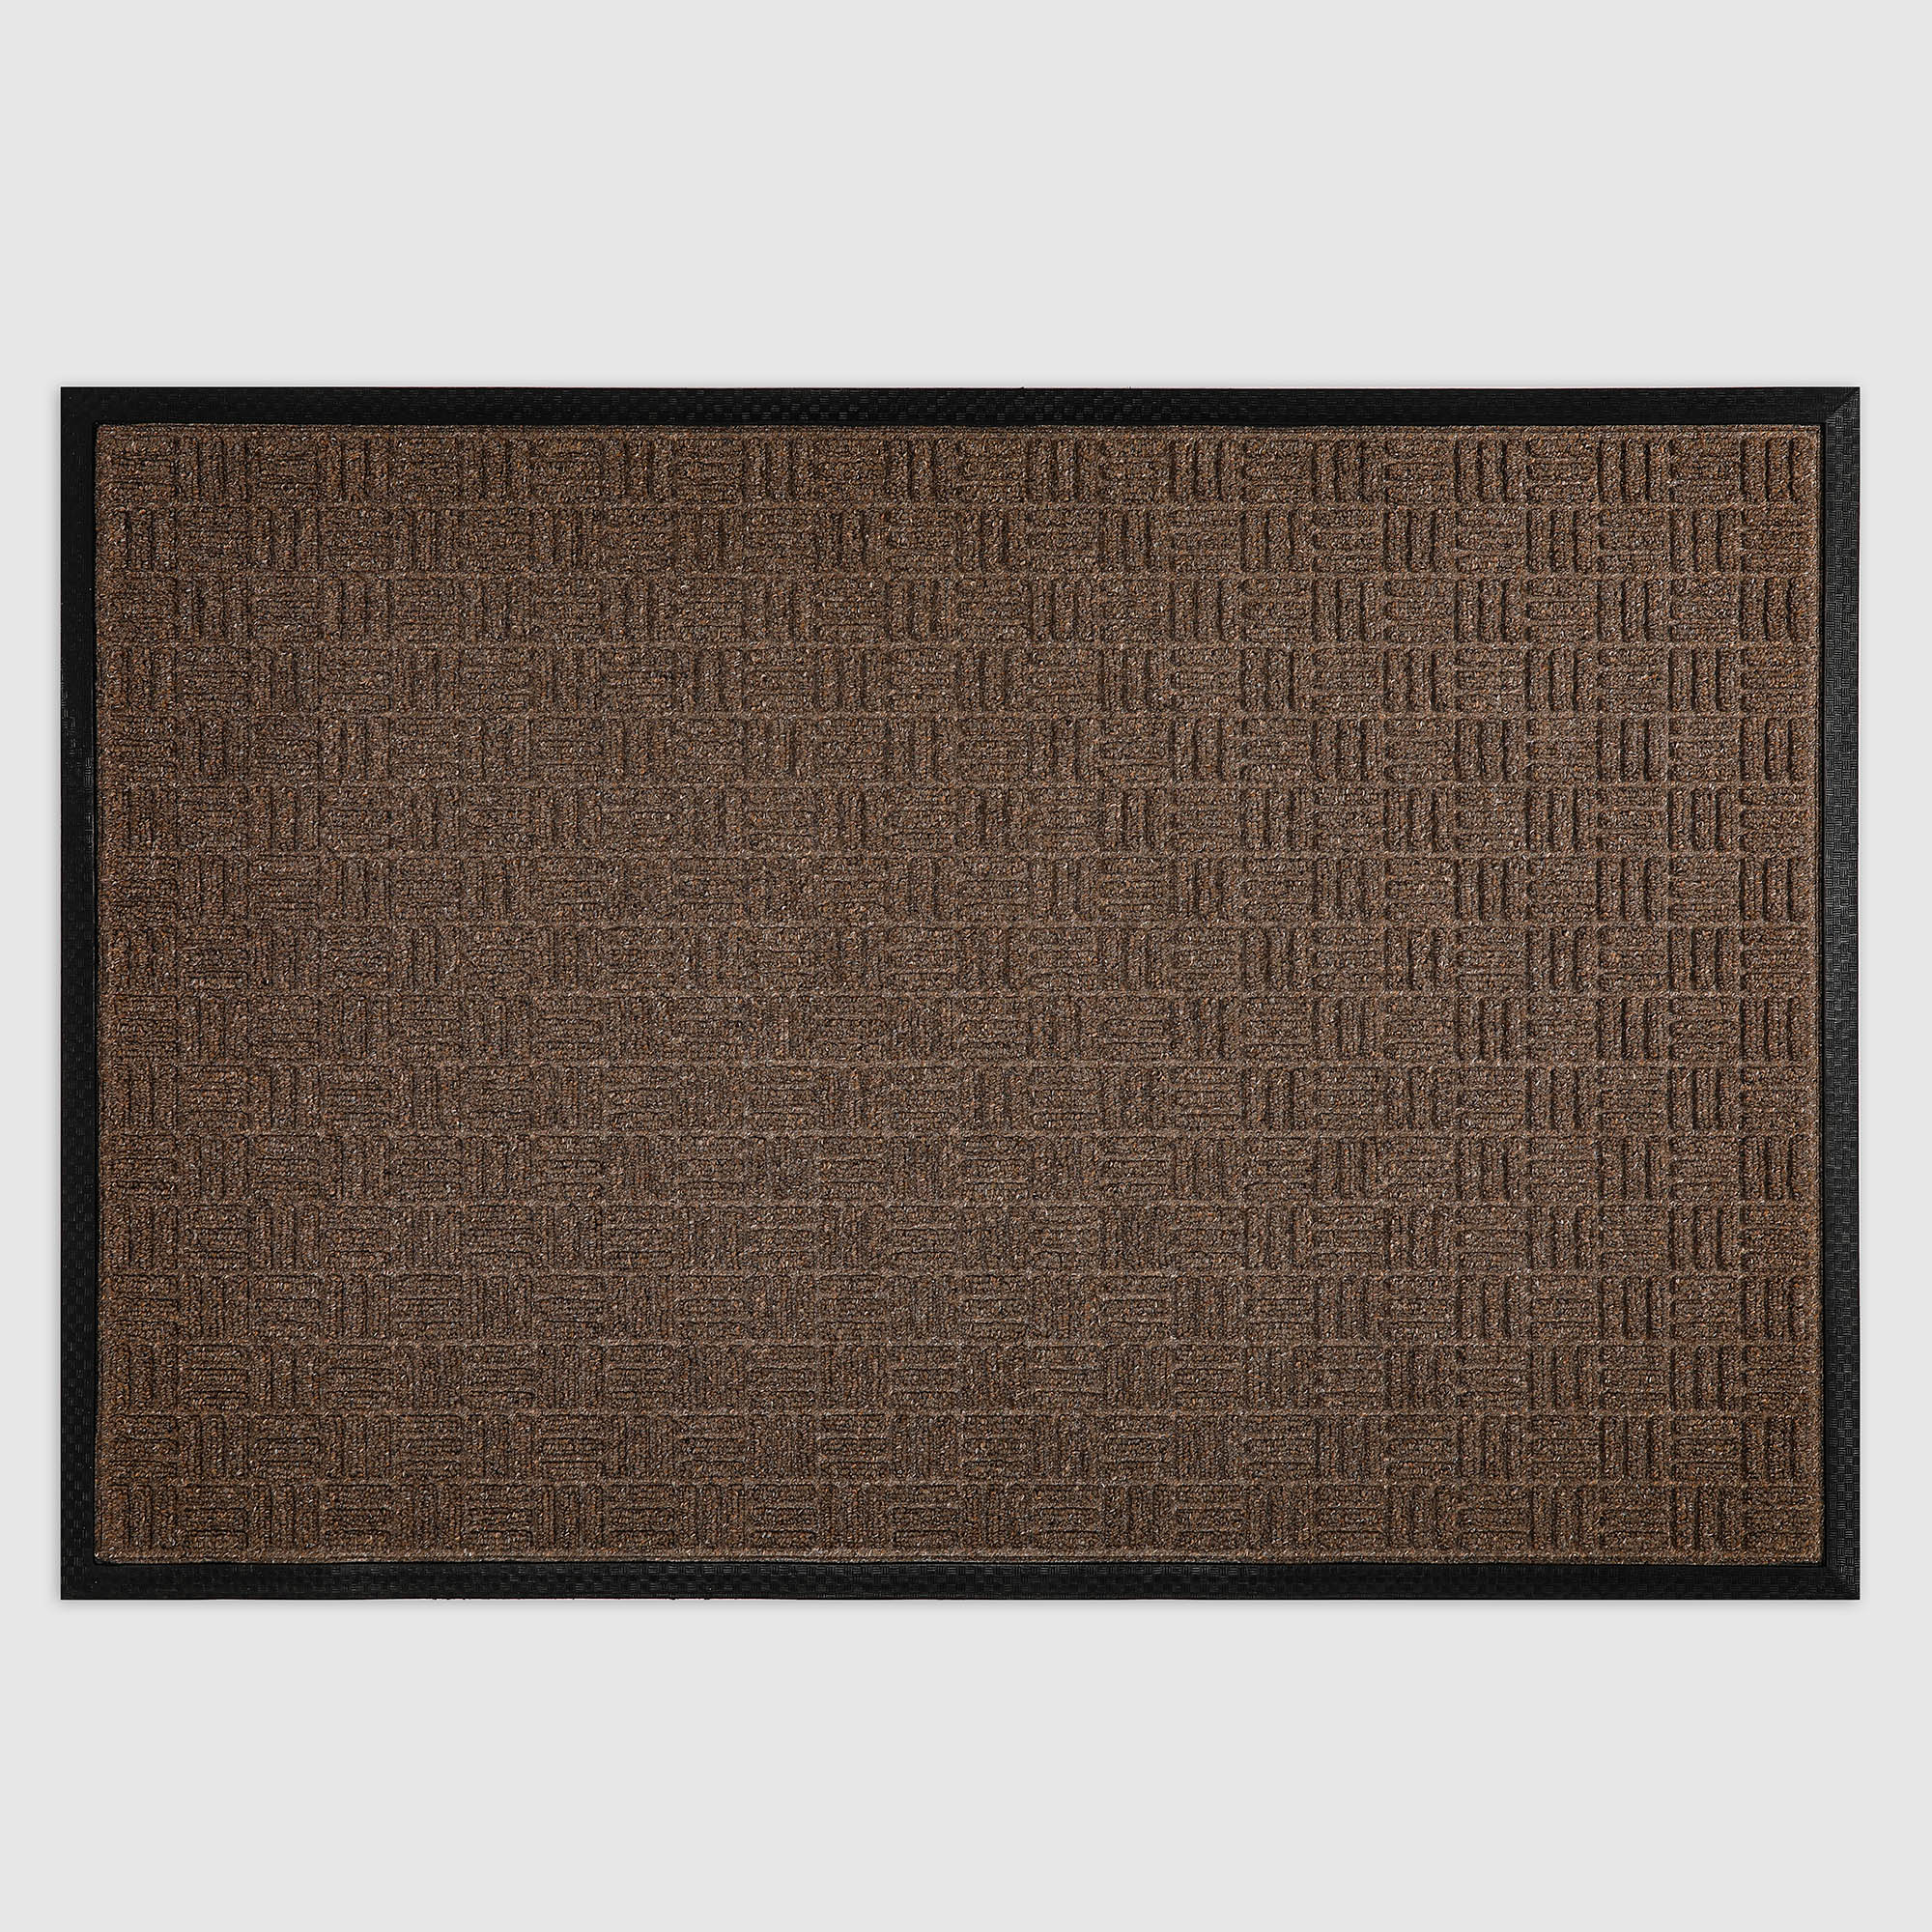 Коврик Jansons Balers коричневый узор квадрат 60х90 см коврик придверный x y carpet faro коричневый 60х90